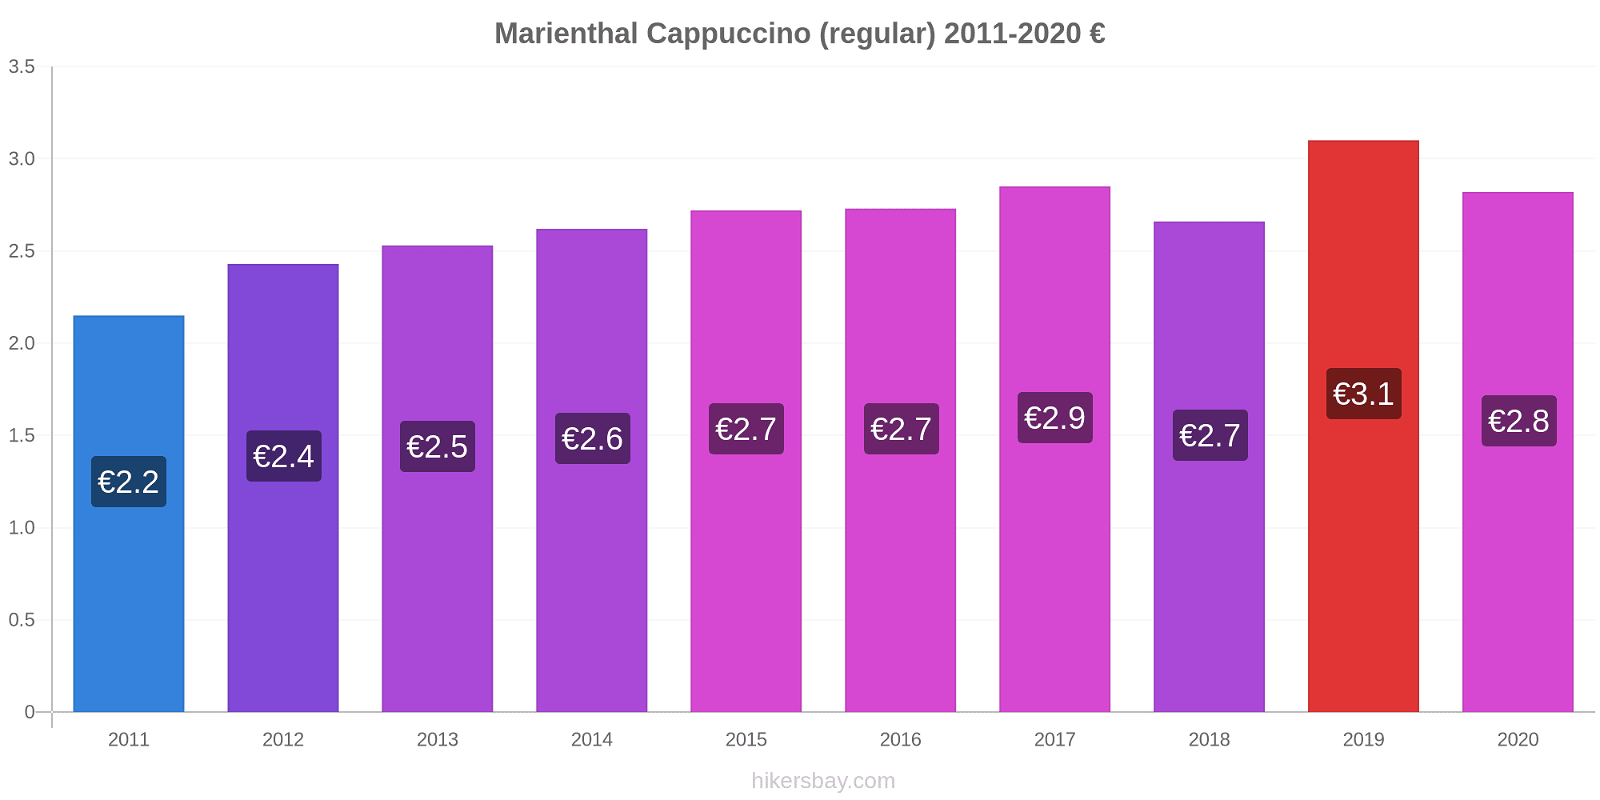 Marienthal price changes Cappuccino (regular) hikersbay.com